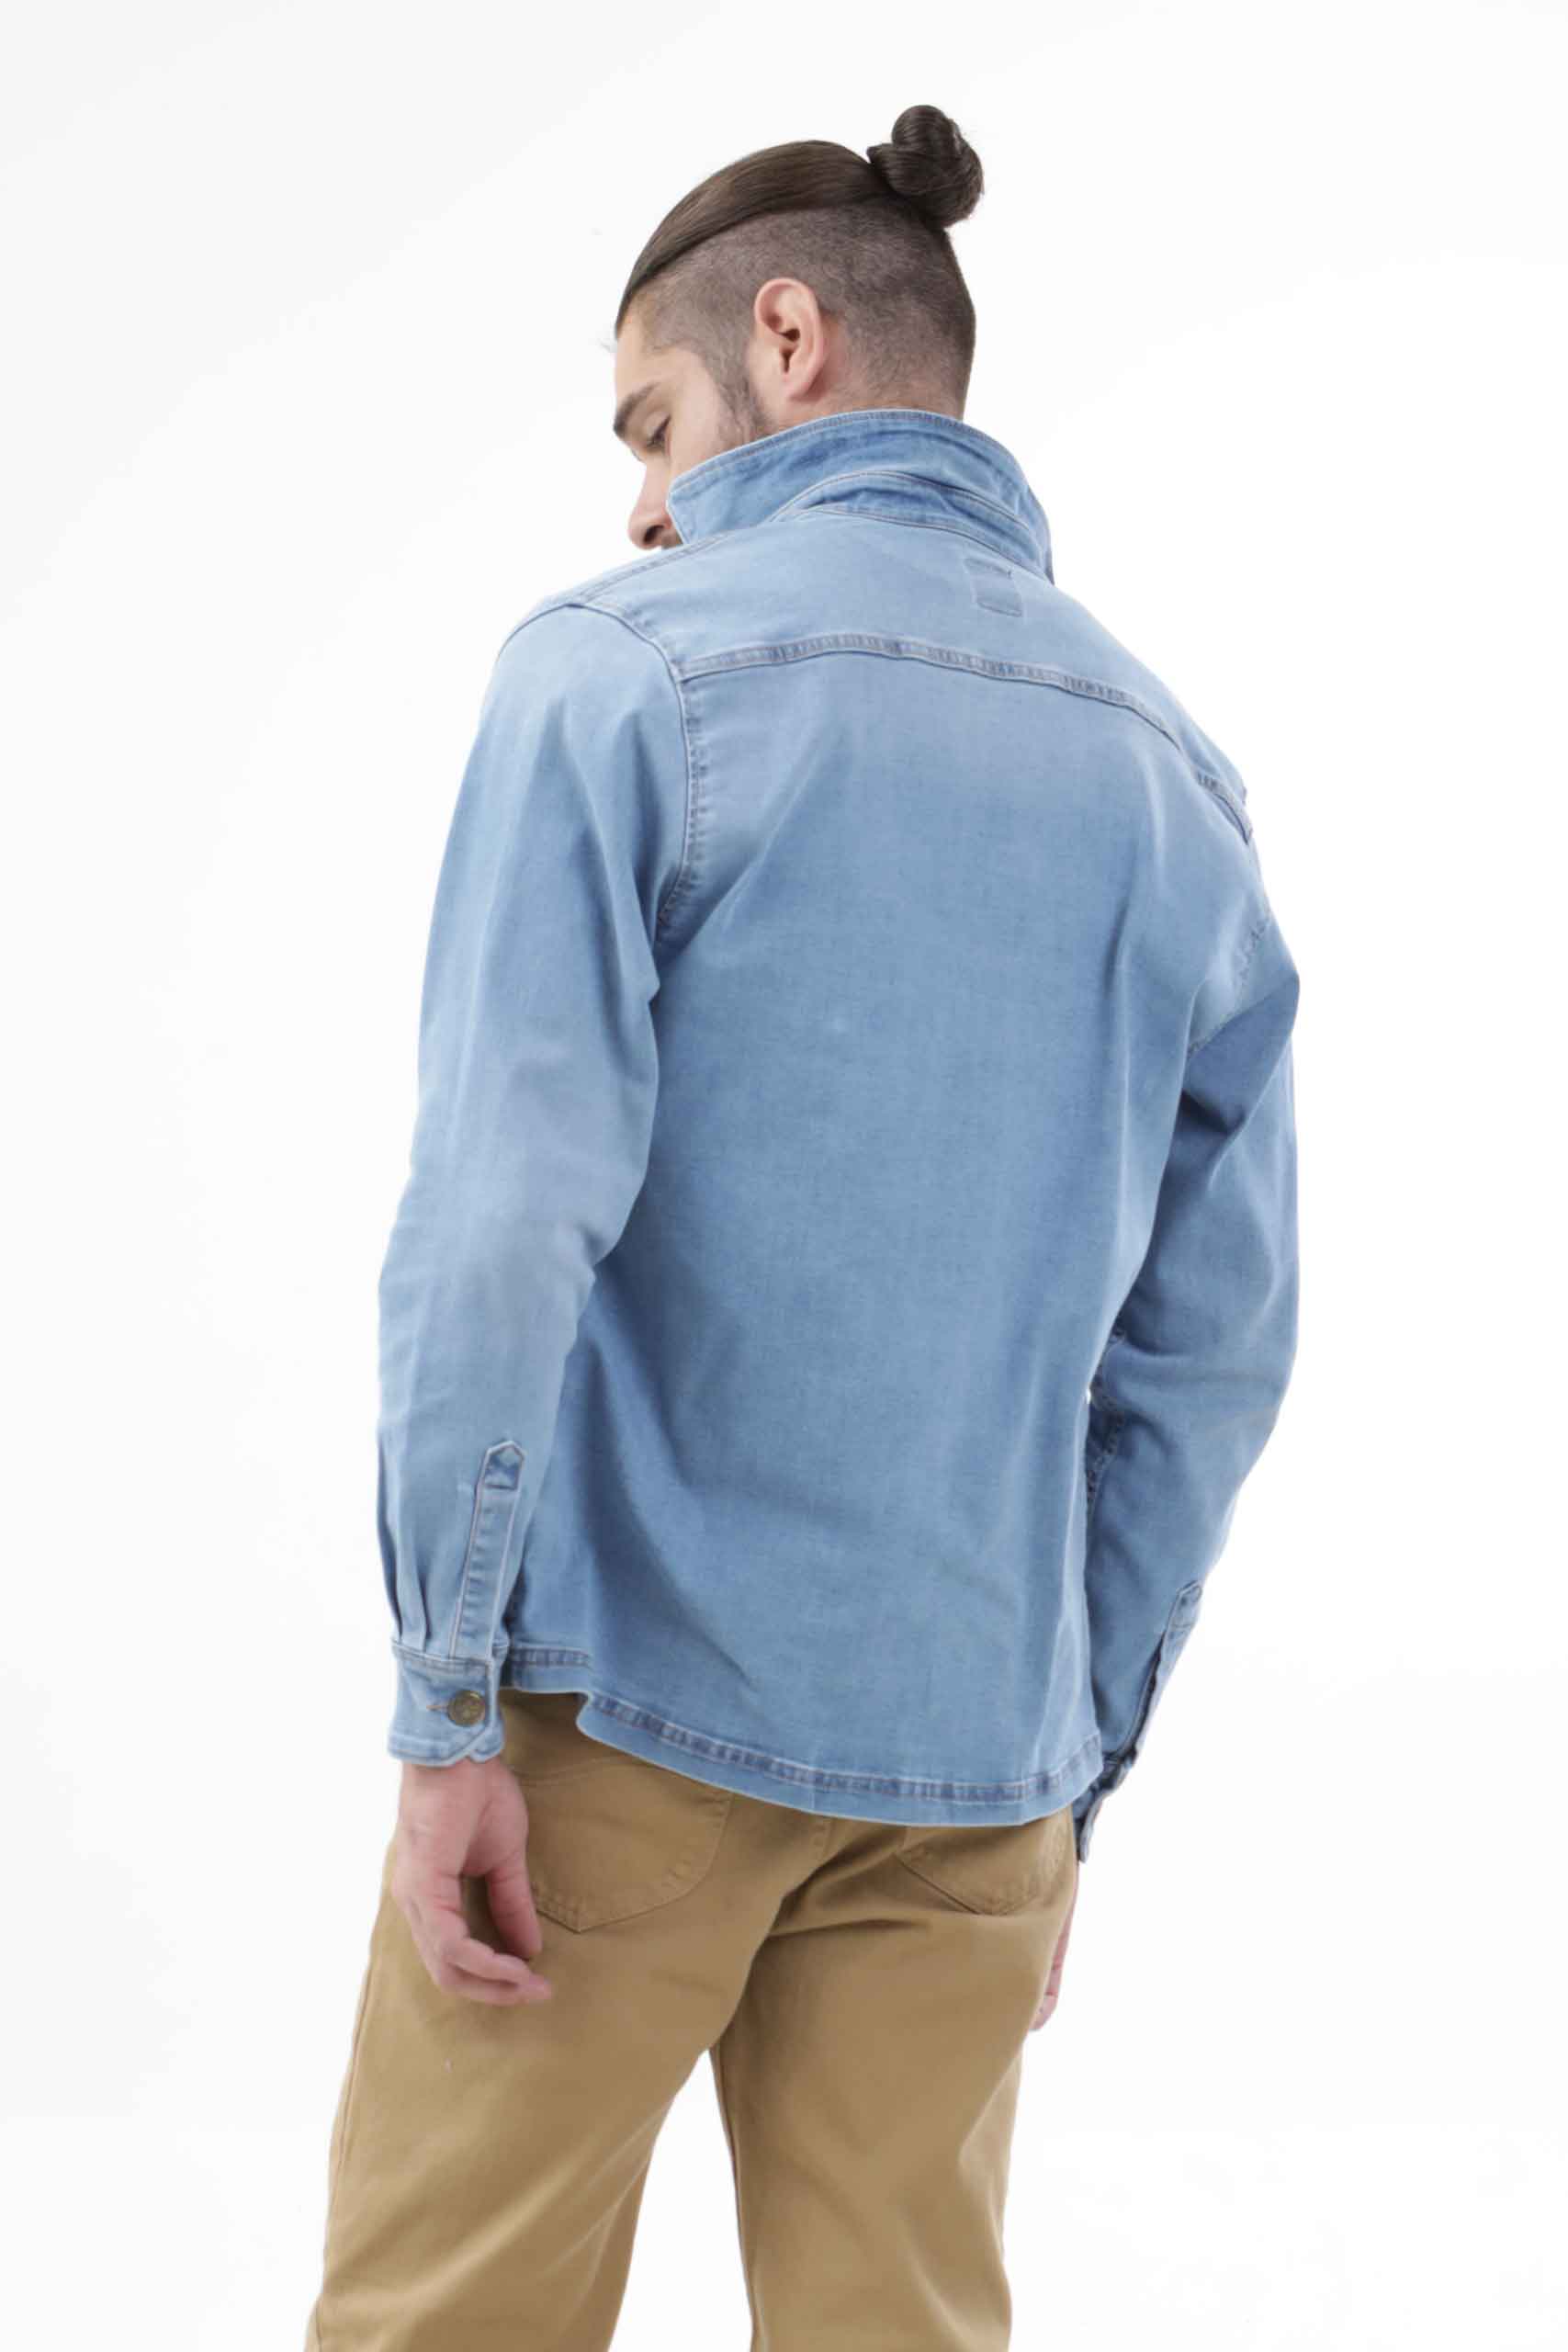 Vista posterior de chaqueta de color azul de marca lee